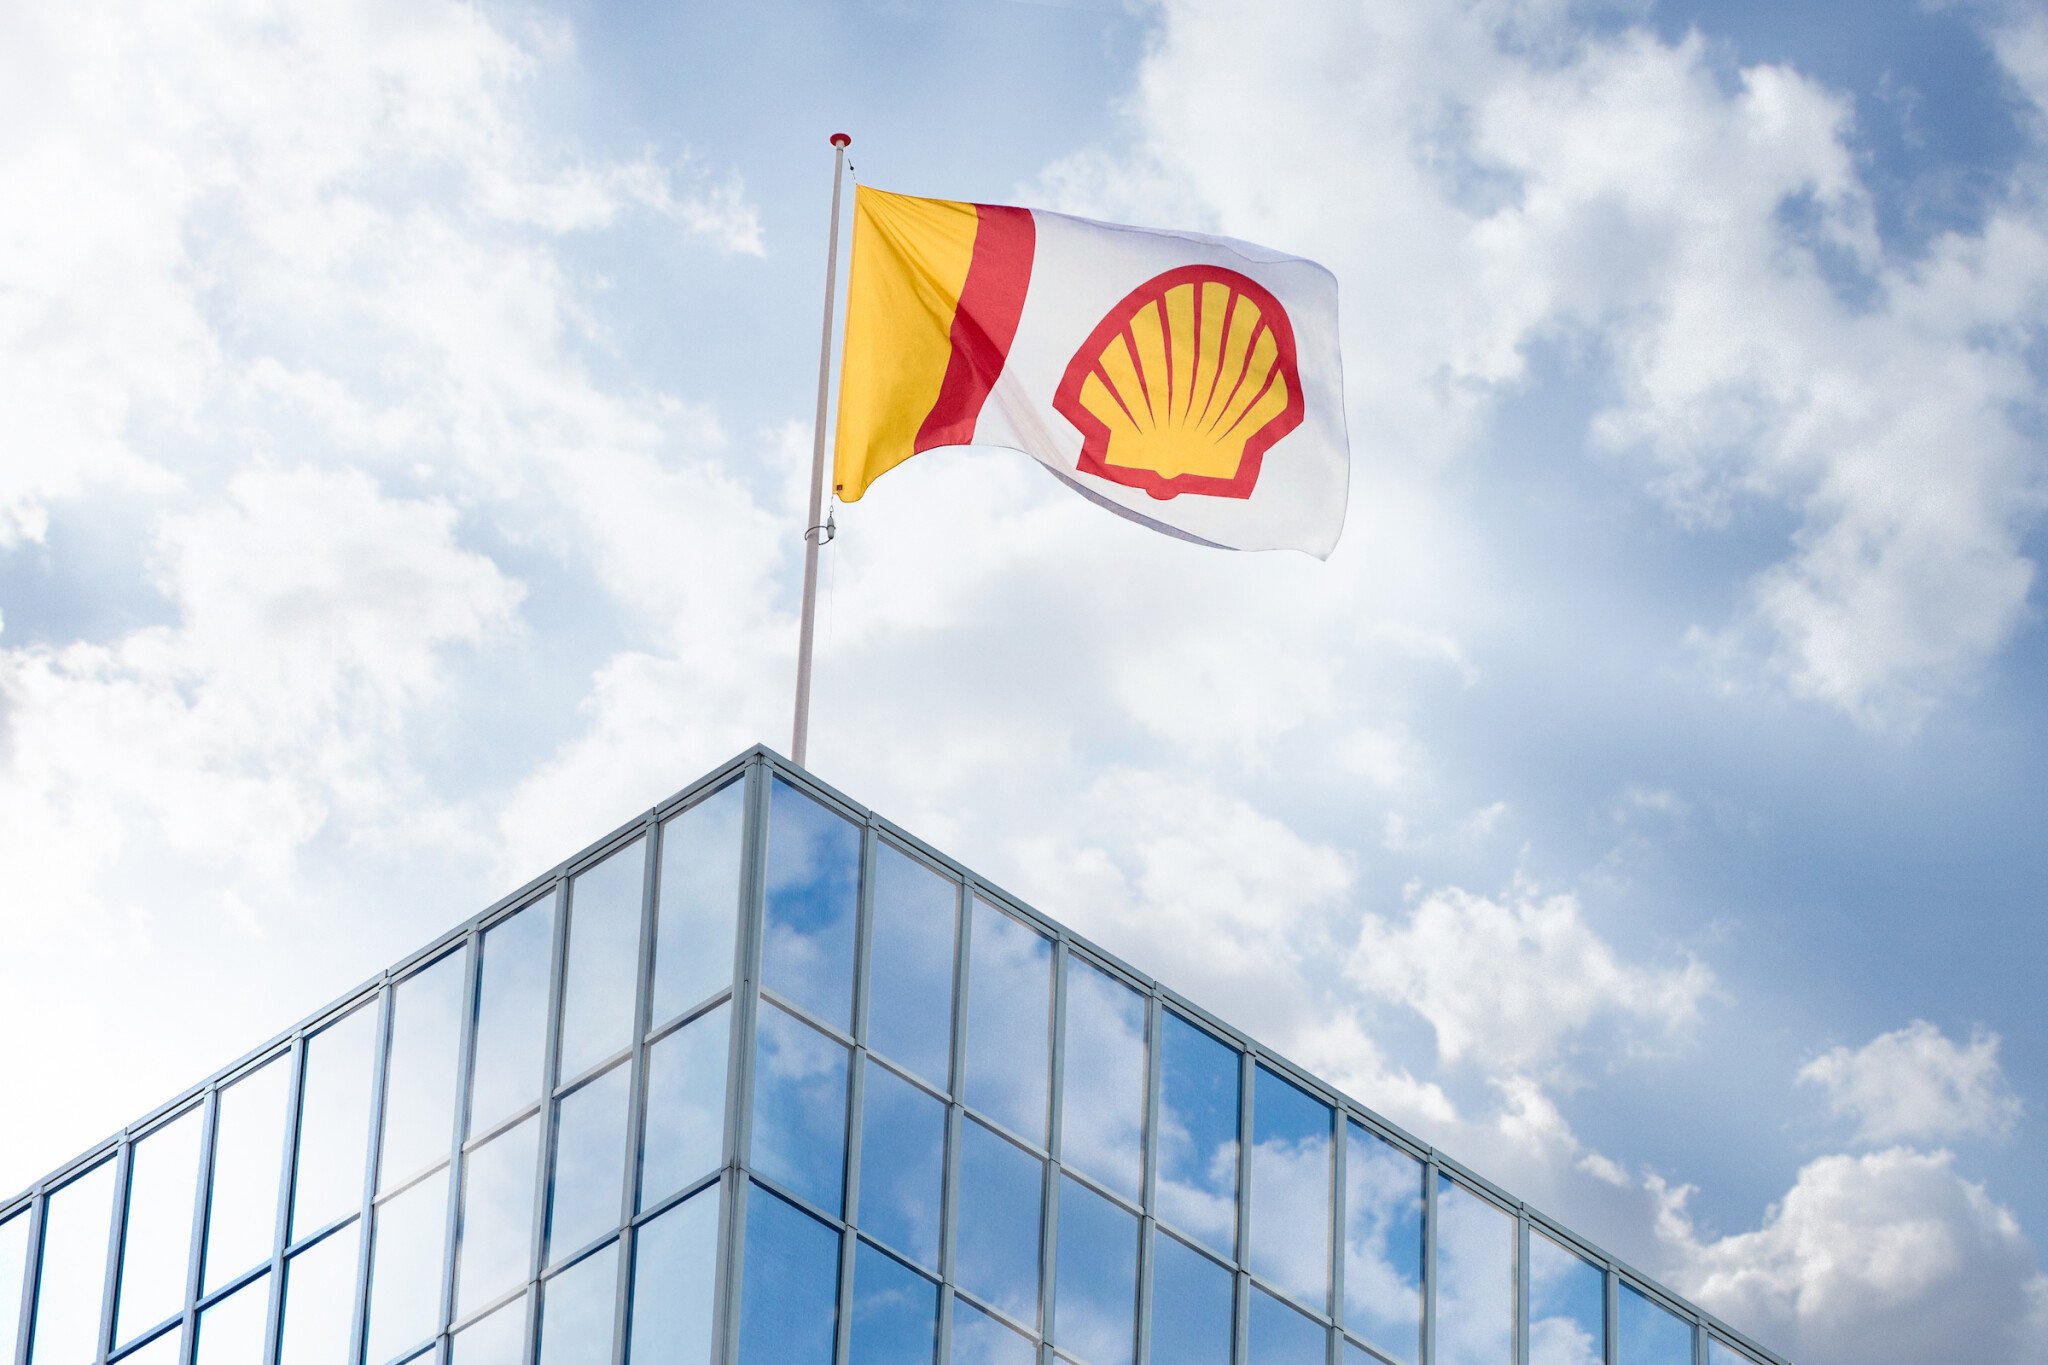 Zisk ropné společnosti Shell loni kvůli koronaviru klesl o 71 procent